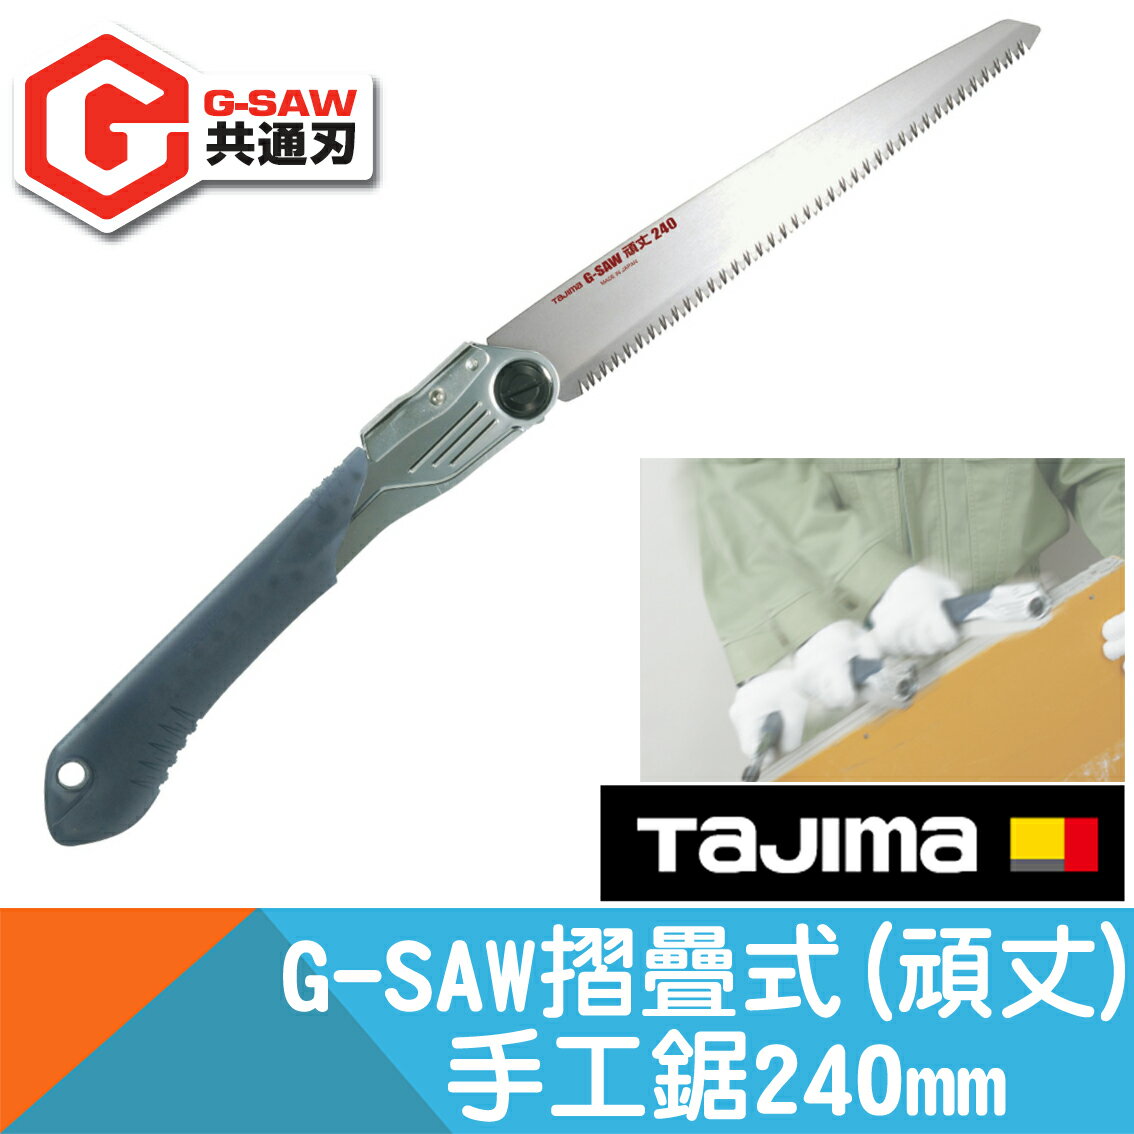 摺疊式手工鋸G-SAW 頑丈240mm【Tajima】